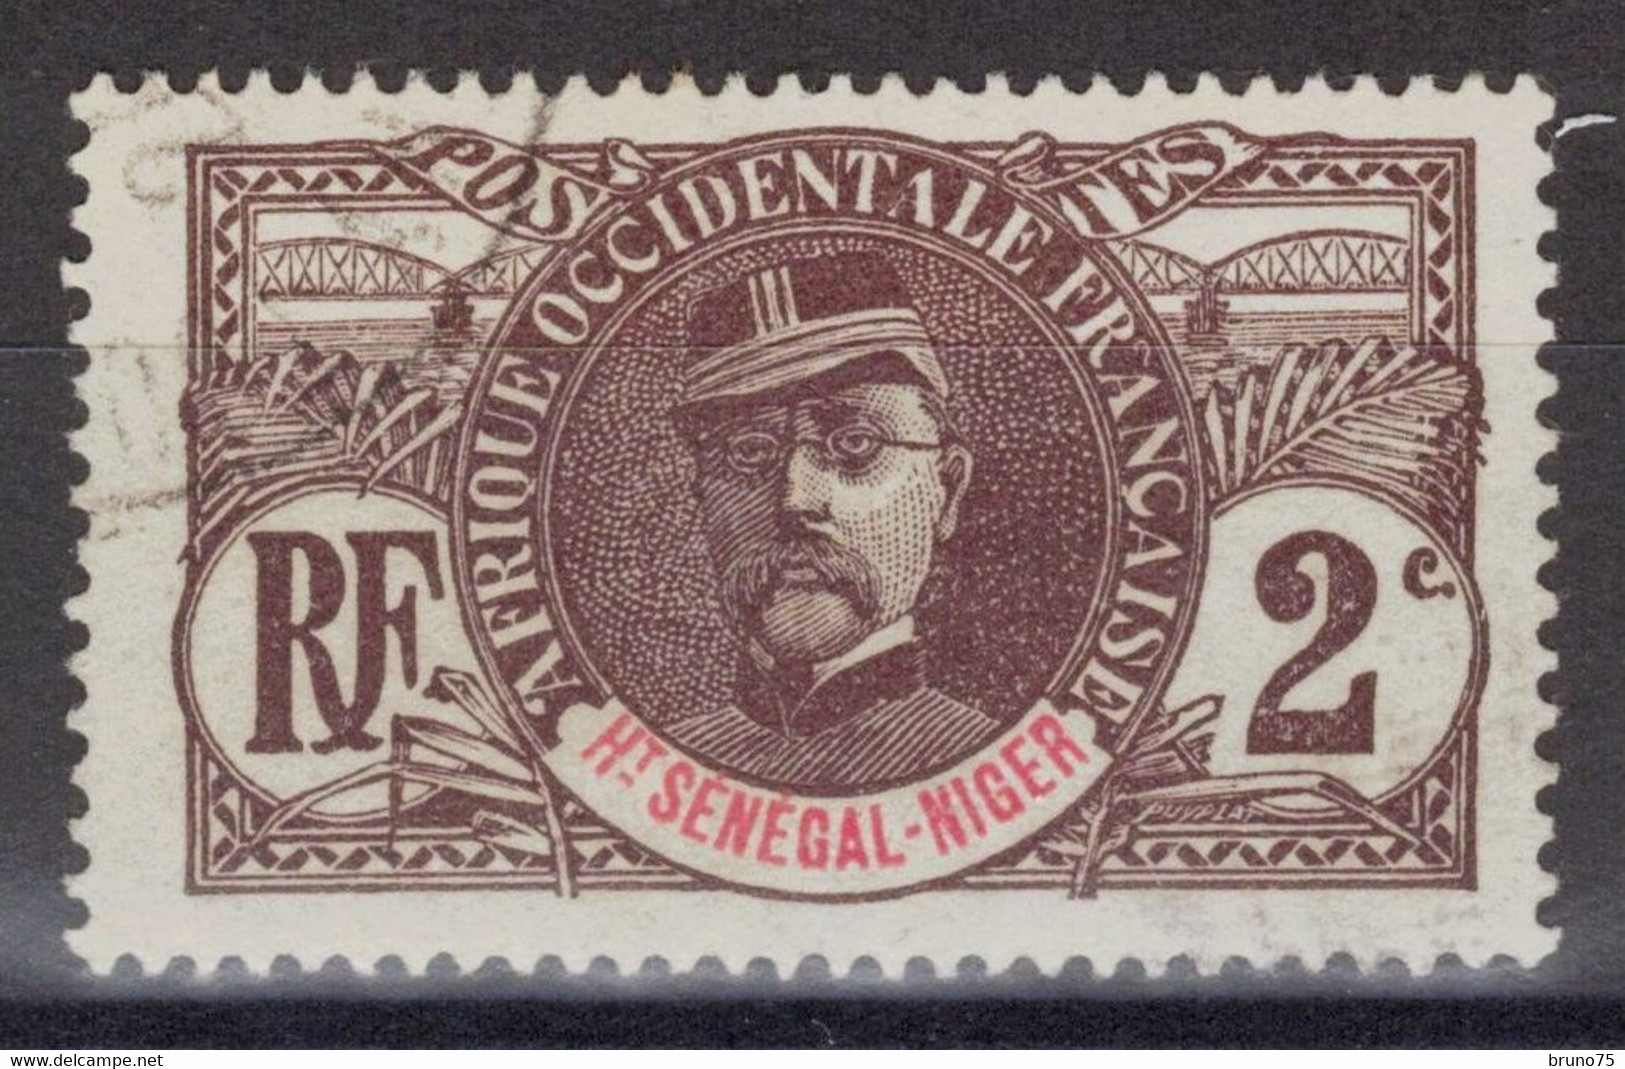 Haut-Sénégal Et Niger - YT 2 Oblitéré - 1906 - Gebraucht